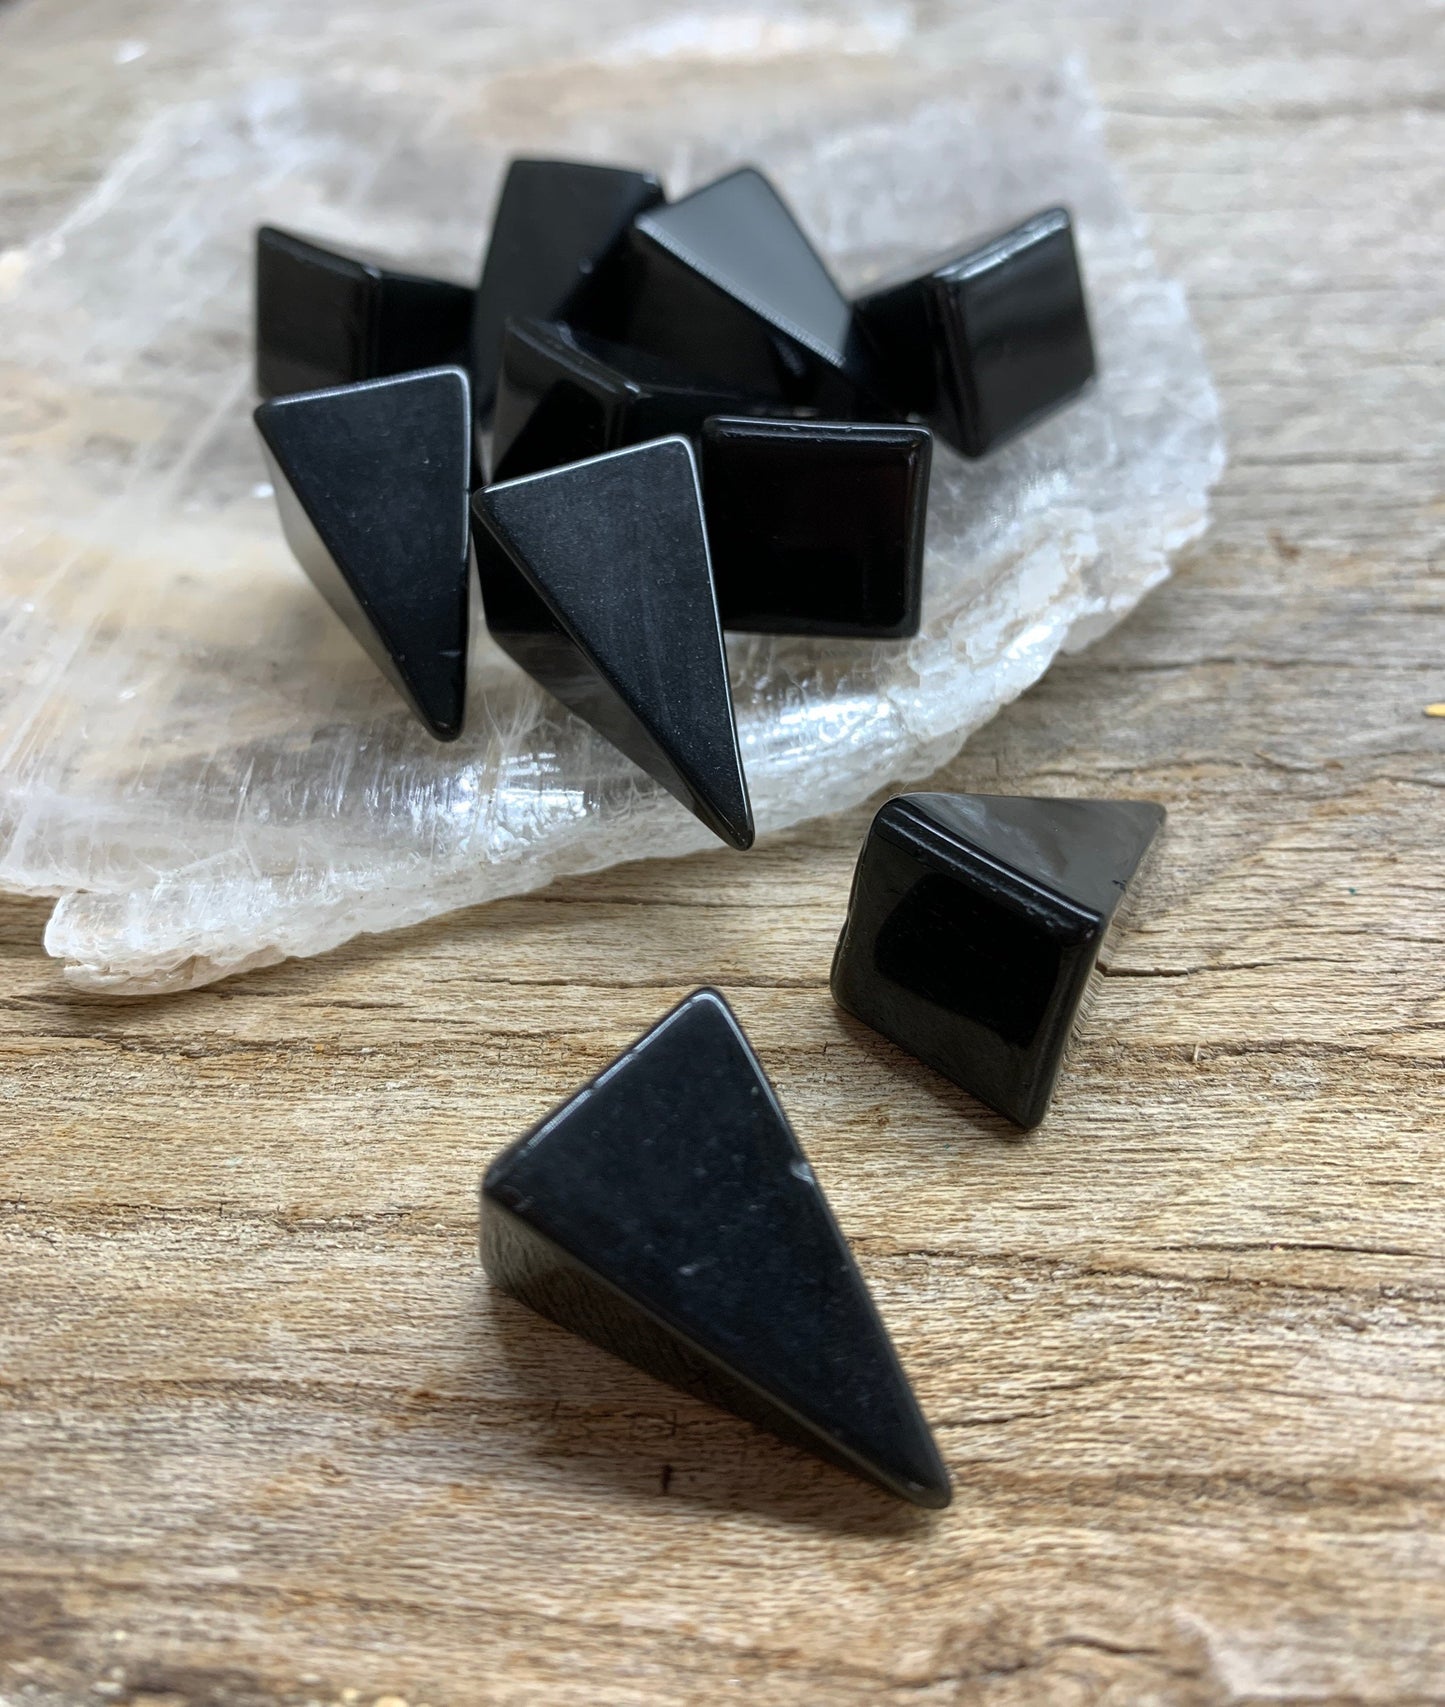 Black Obsidian Pyramid 1” 0311